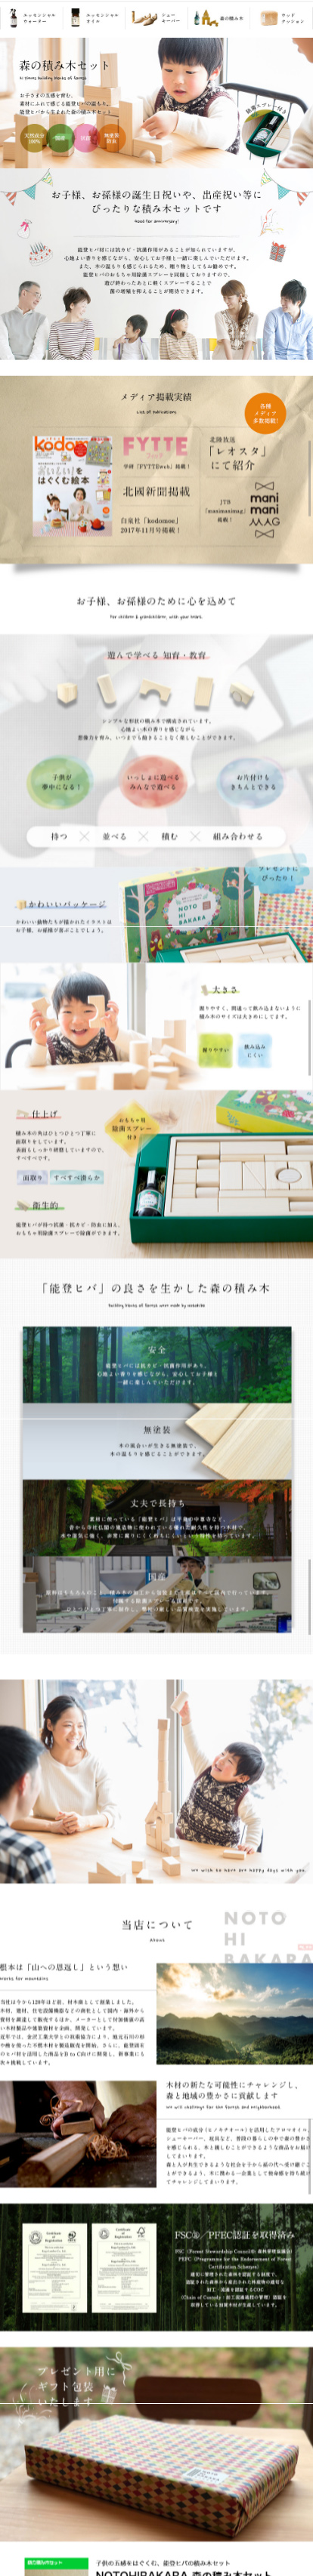 NOTOHIBAKARA 森の積み木セット_sp_1